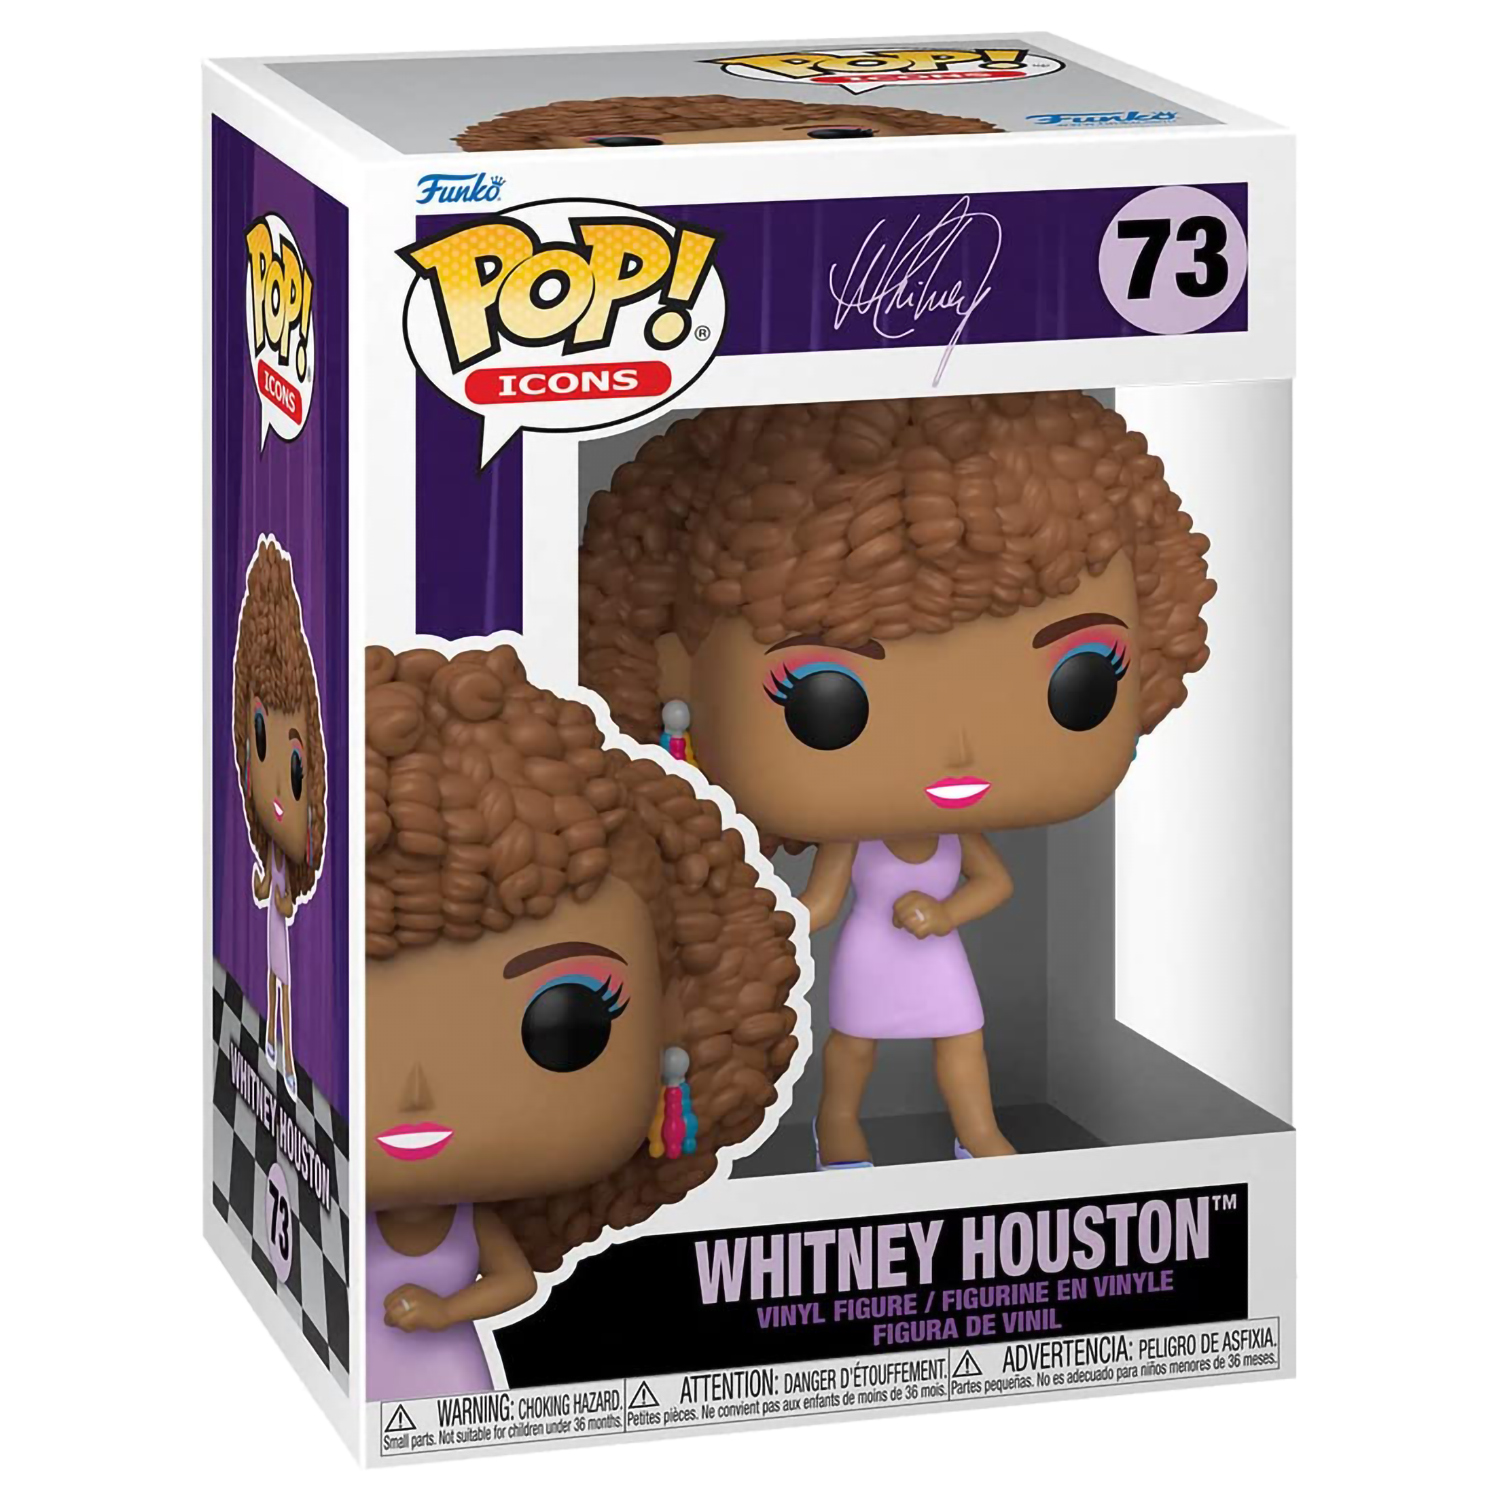 Фигурка Funko POP! Icons Whitney Houston (IWDWS) (73) 60932 - фото 2